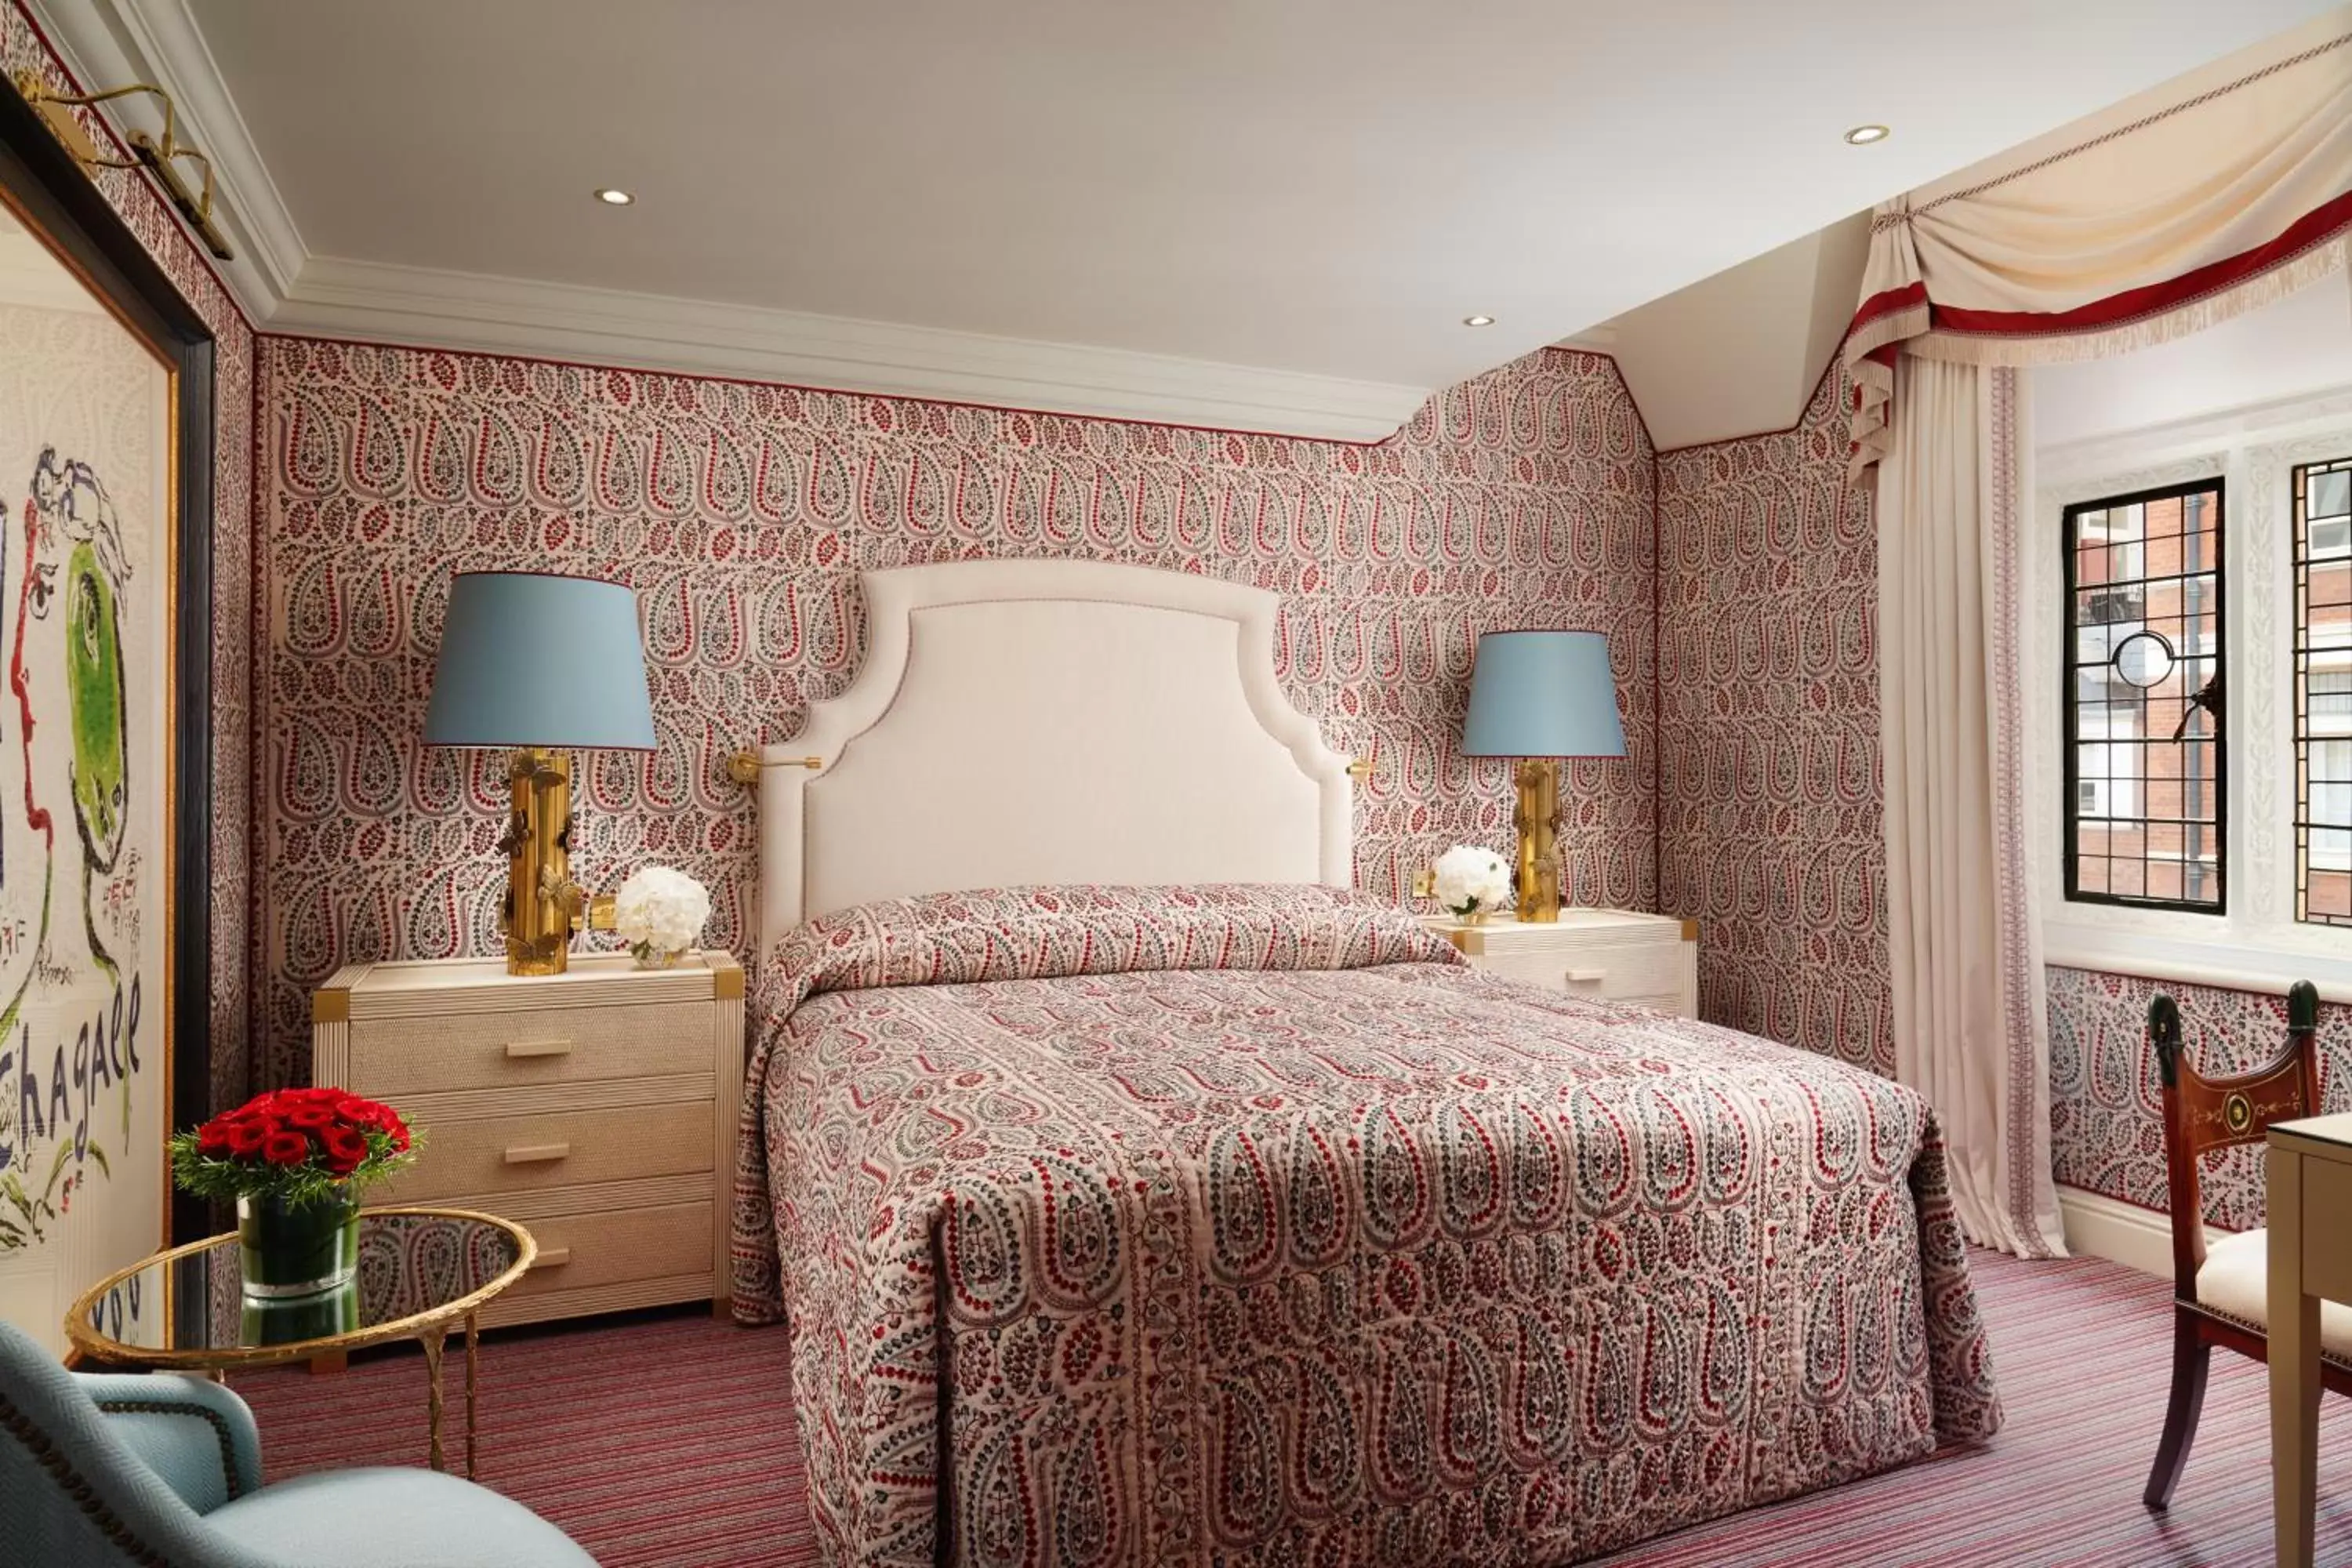 Bed in Milestone Hotel Kensington